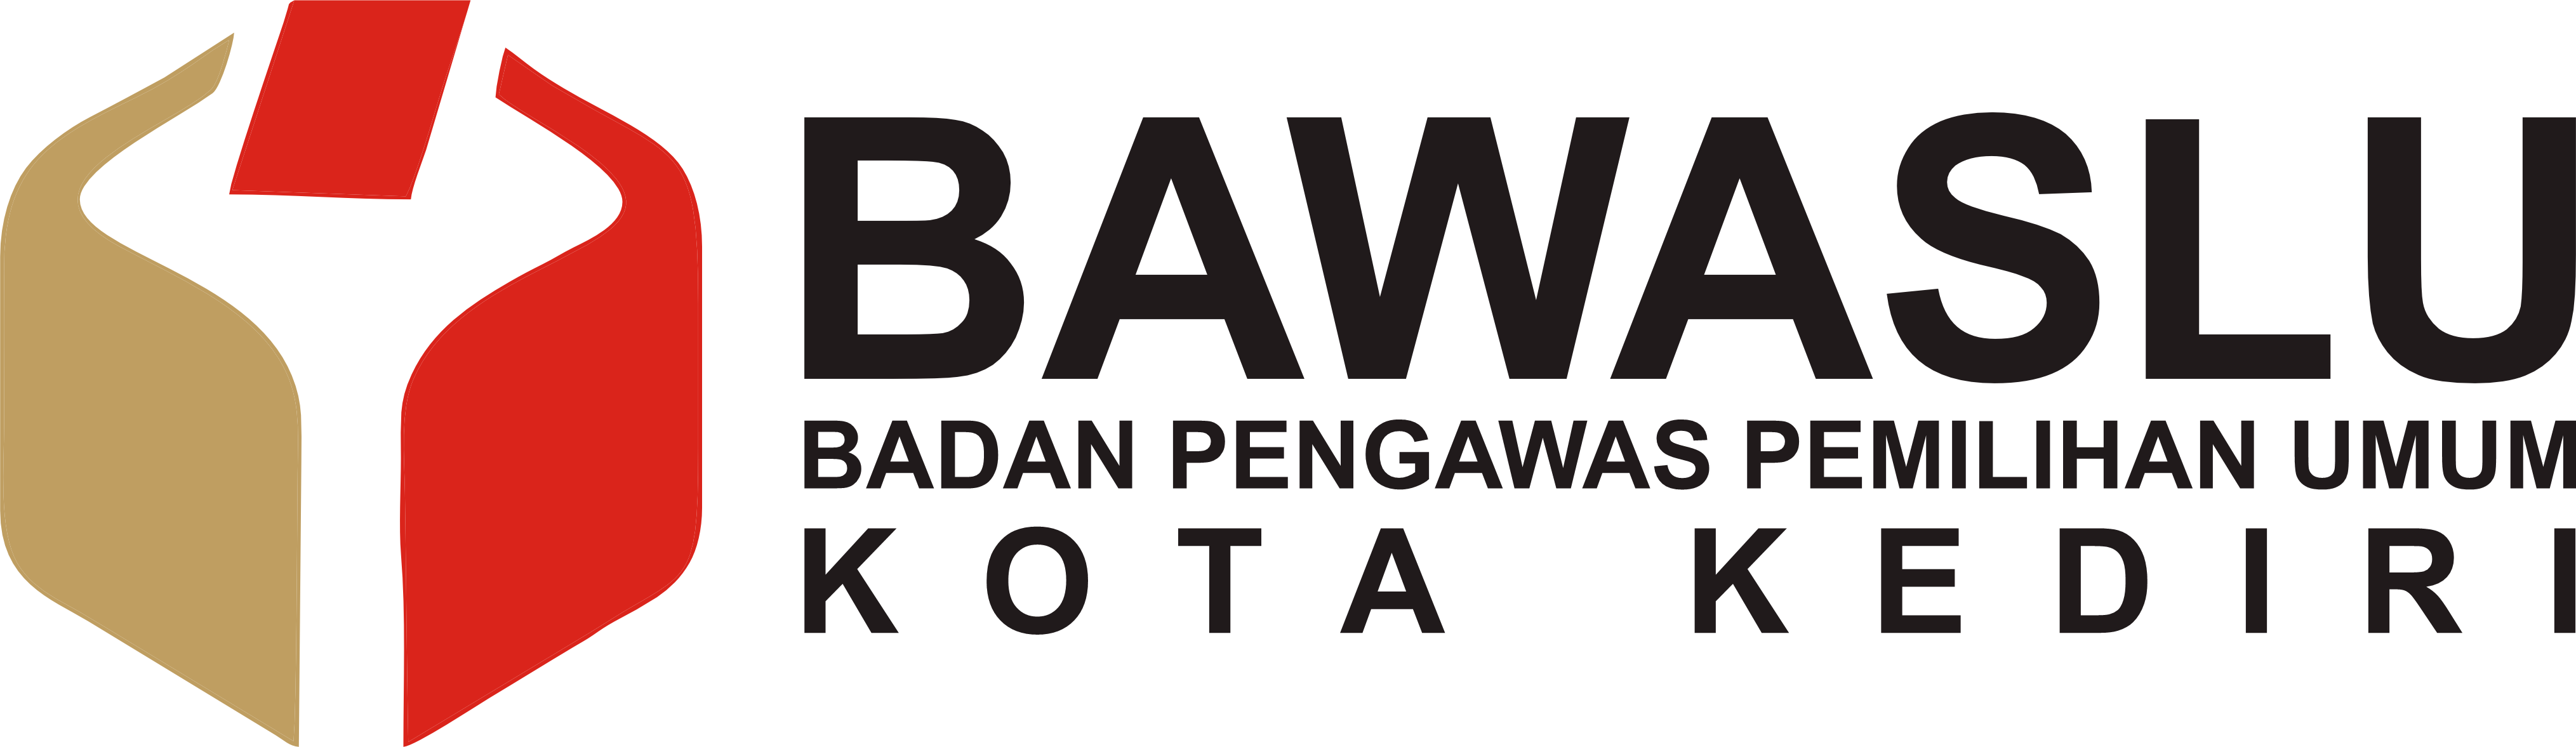 Bawaslu logo